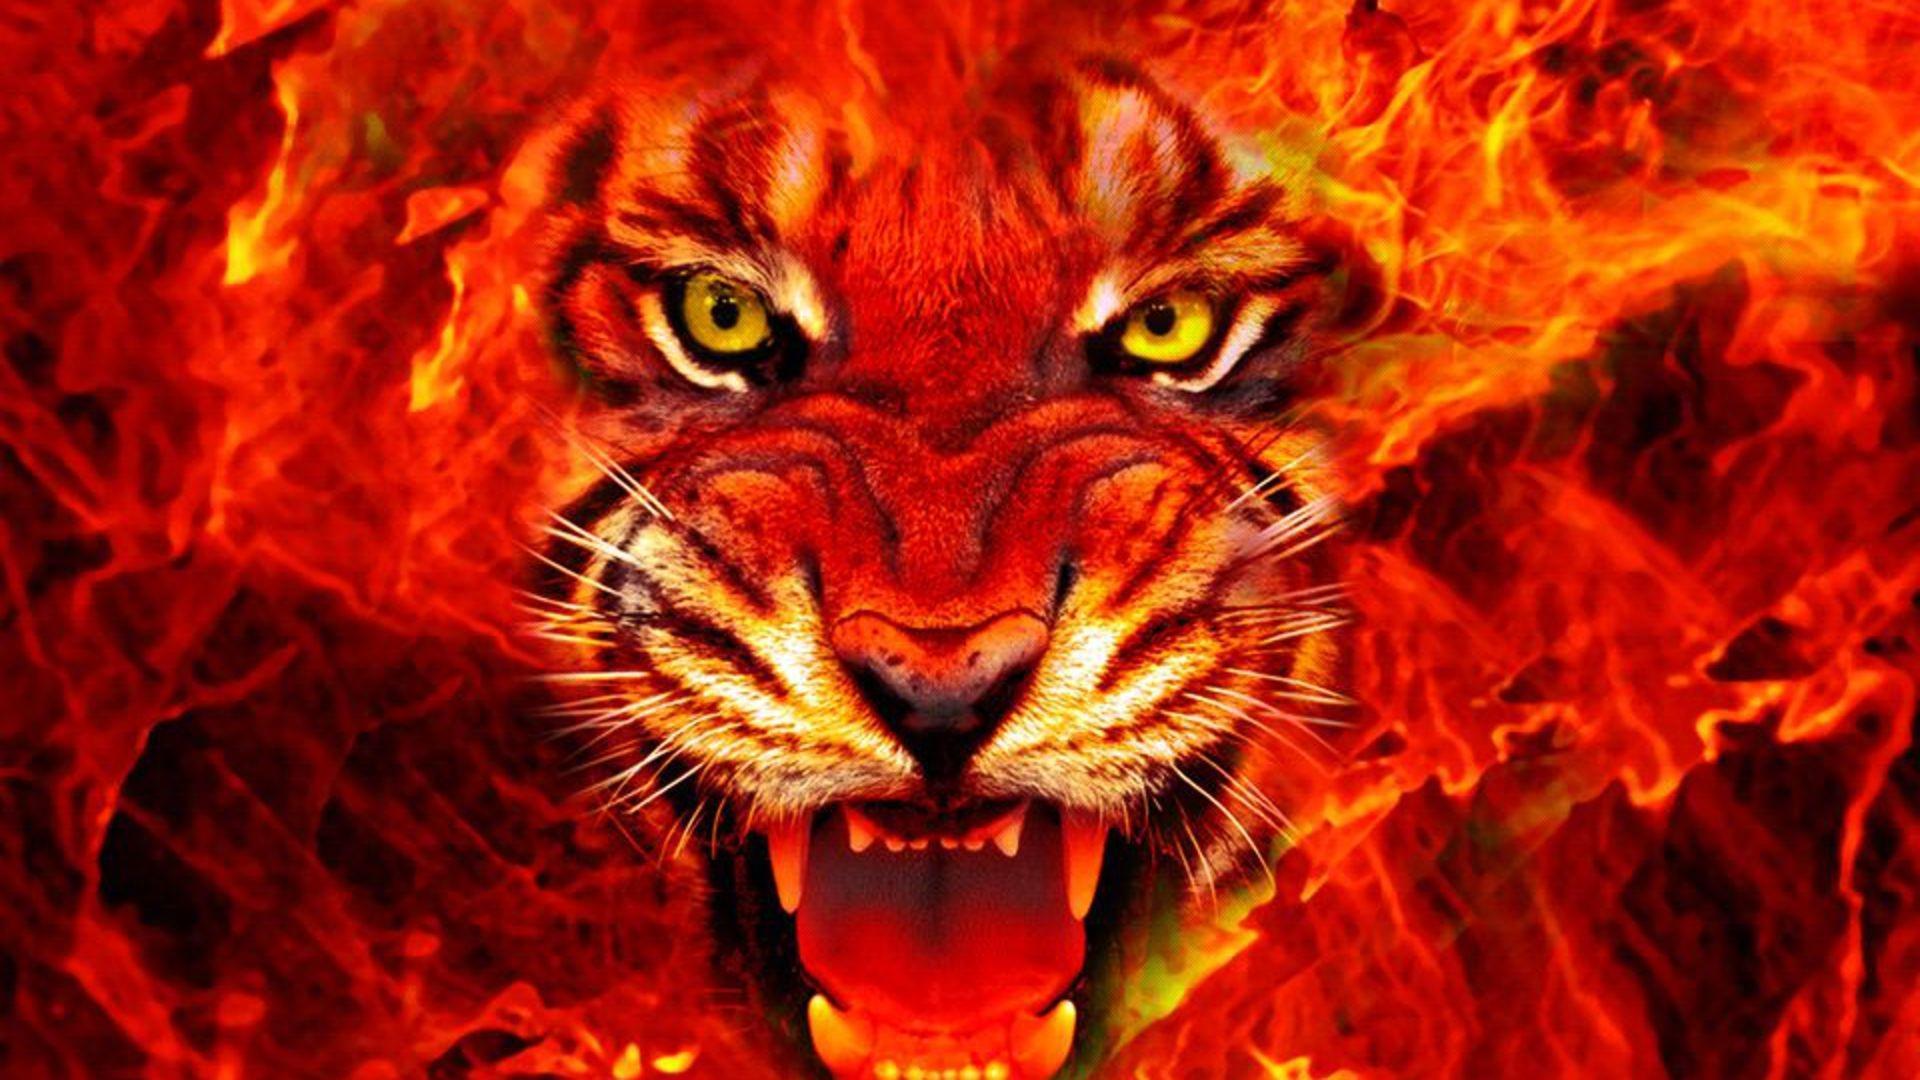 Lion on fire HD desktop wallpaper, Widescreen, High Definition